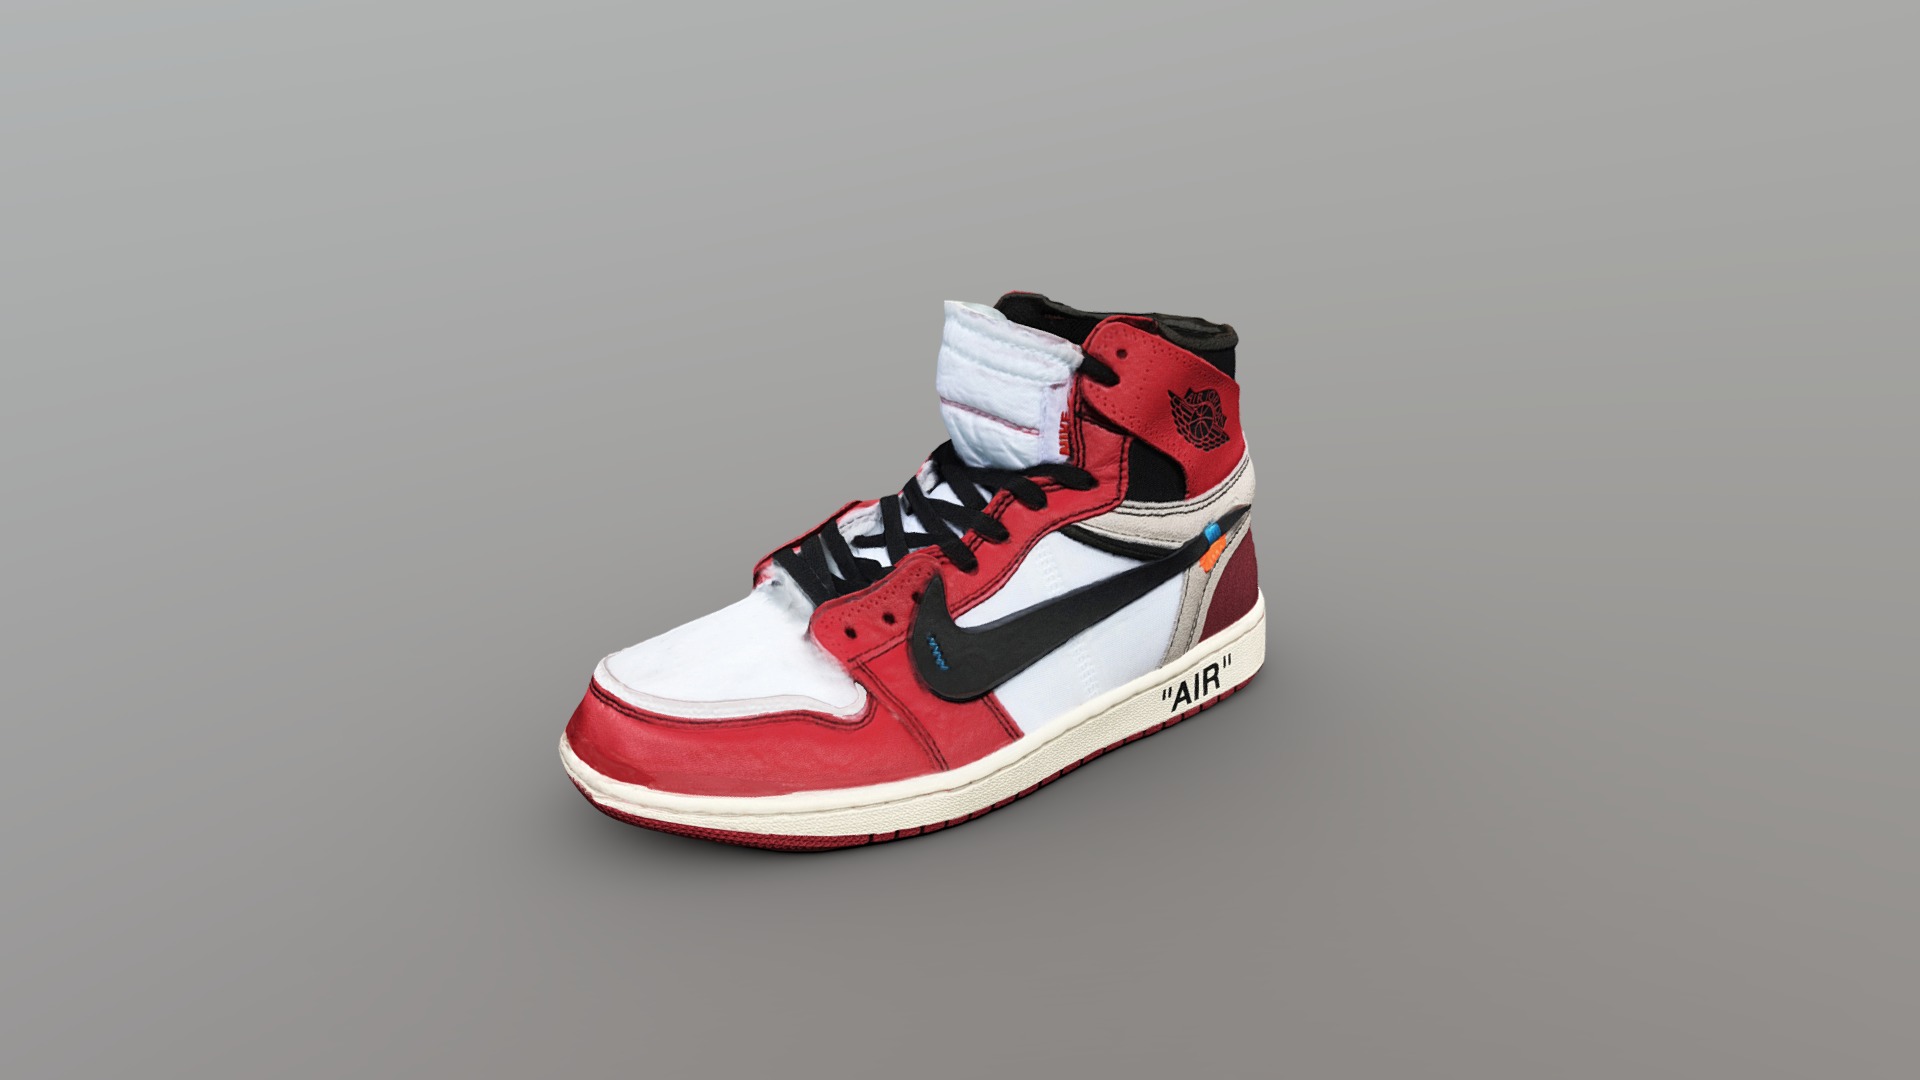 3D model Off-White x Nike Air Jordan 1 Shoe - This is a 3D model of the Off-White x Nike Air Jordan 1 Shoe. The 3D model is about a pair of red and white sneakers.